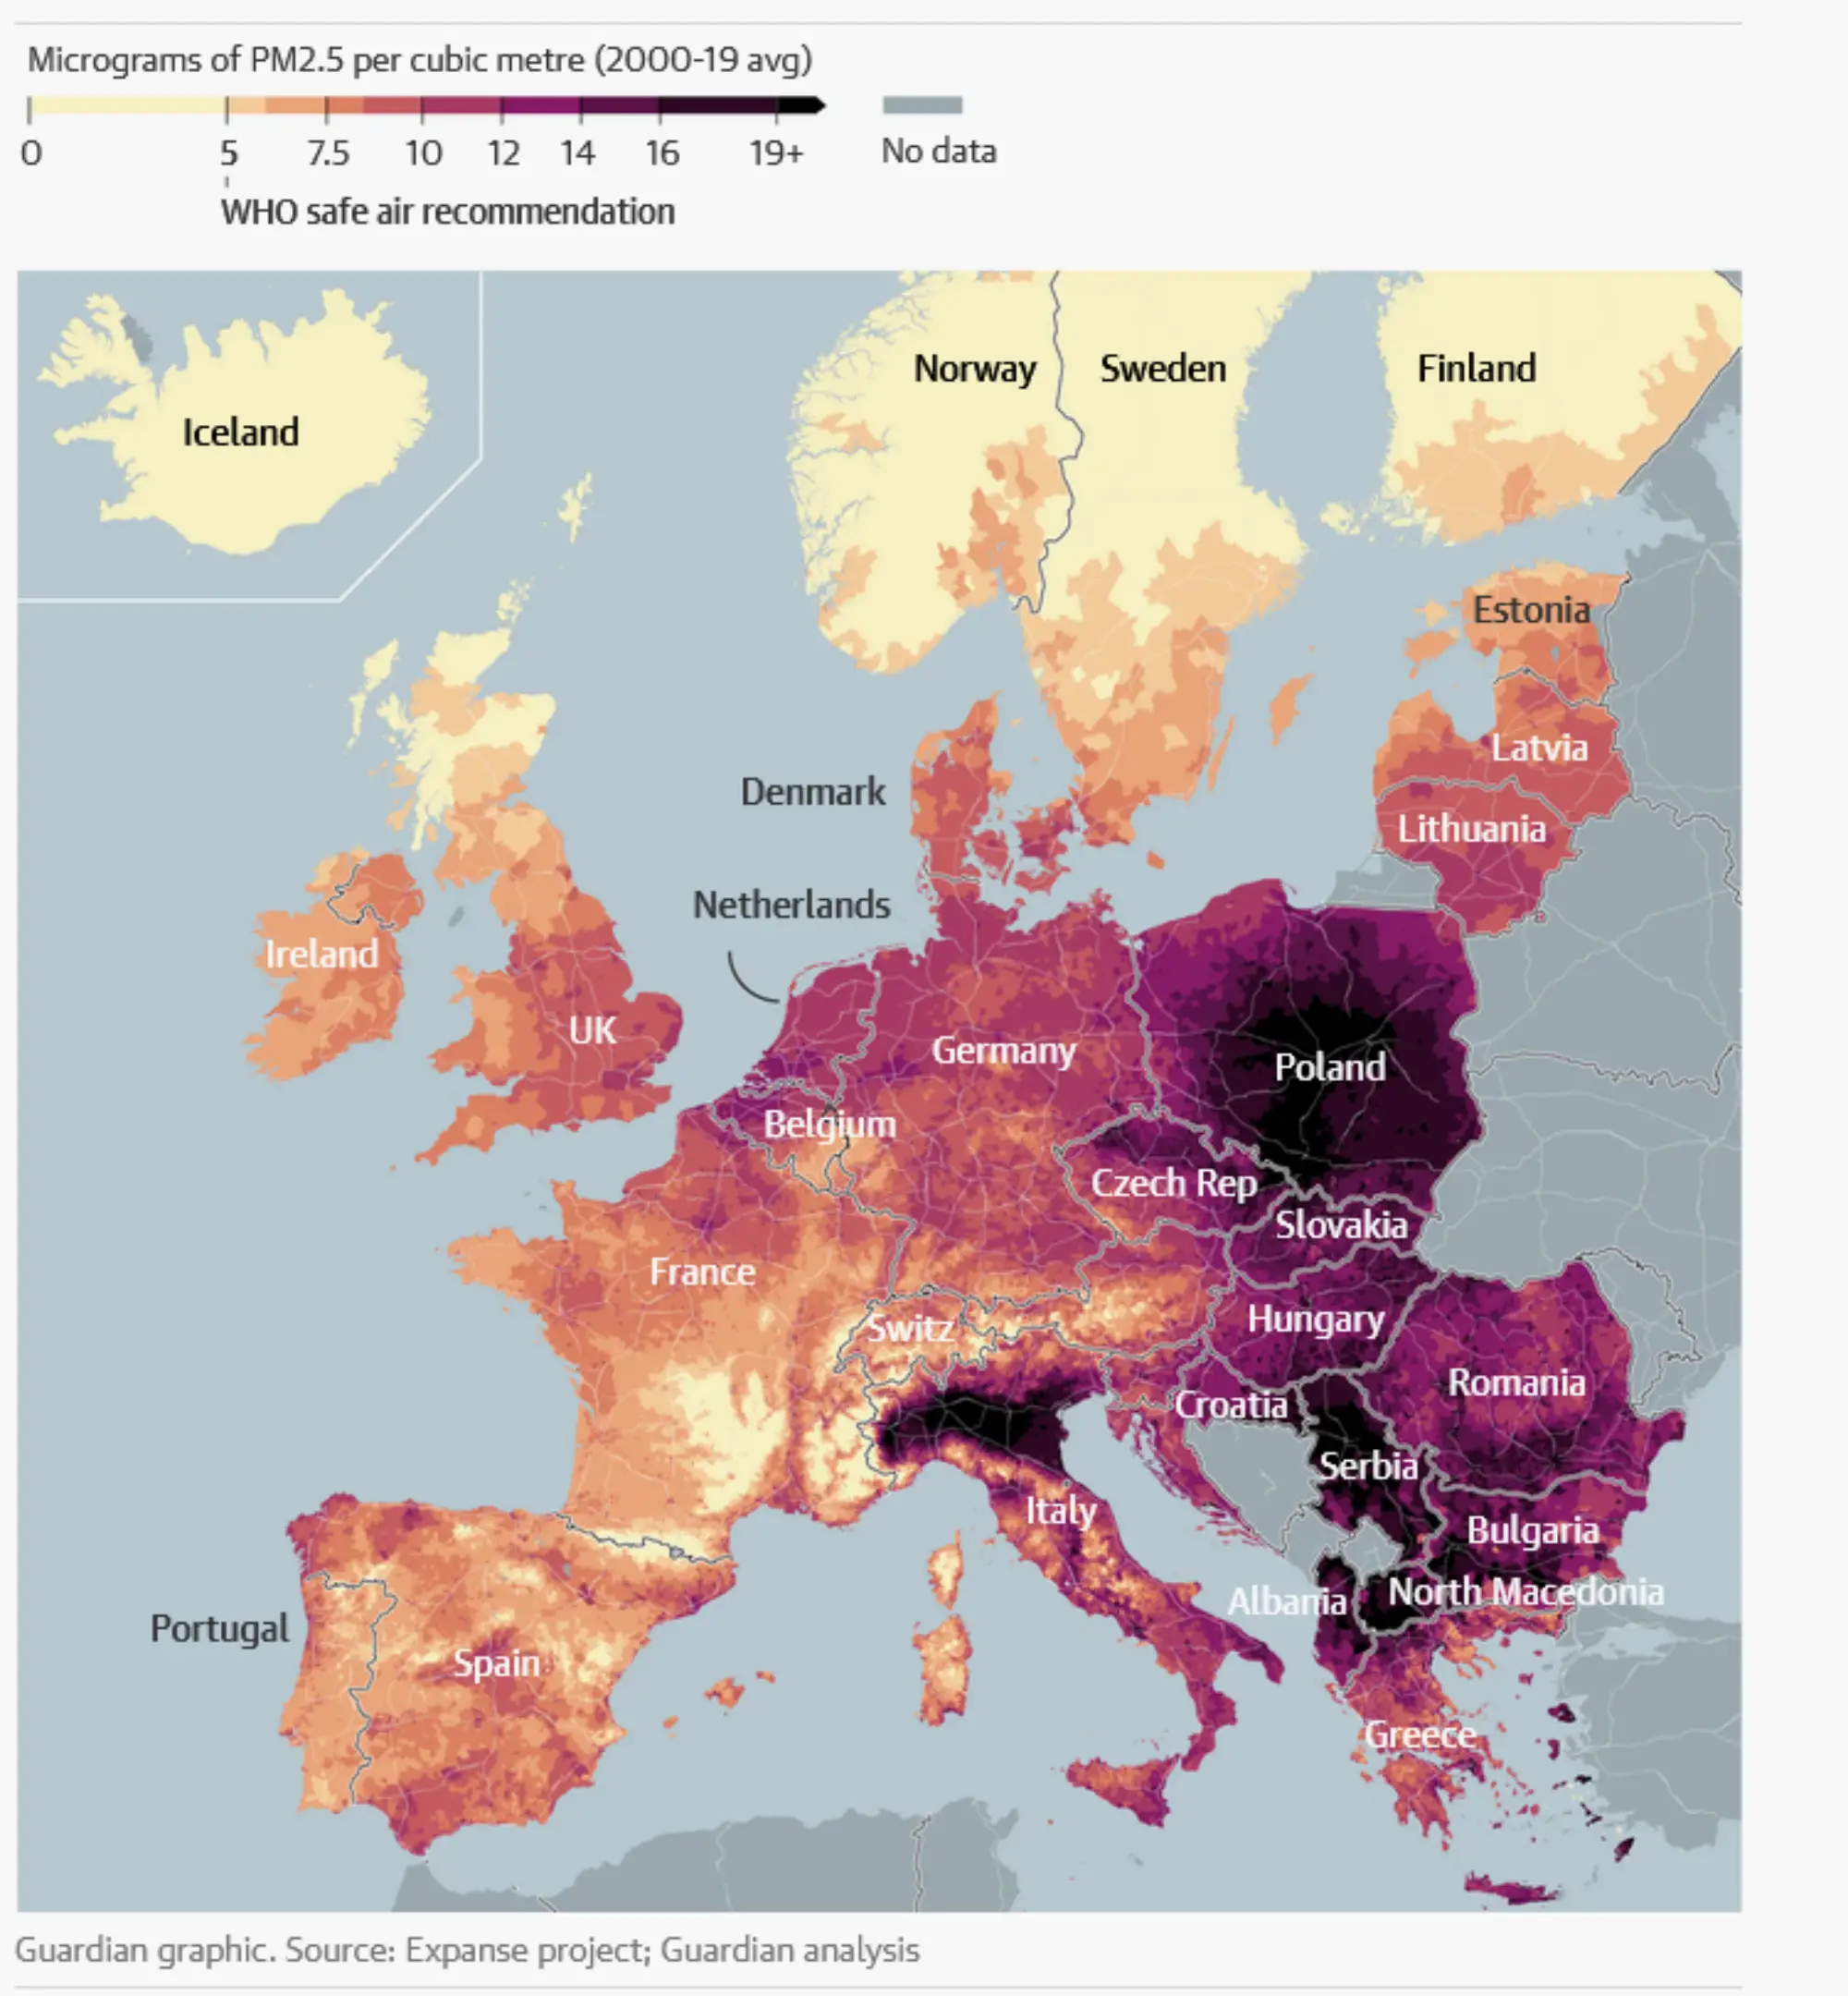 Γράφημα από την ανάλυση του Guardian που απεικονίζει τις συγκεντρώσεις των μικροσωματιδίων PM2.5 στις χώρες της Ευρώπης